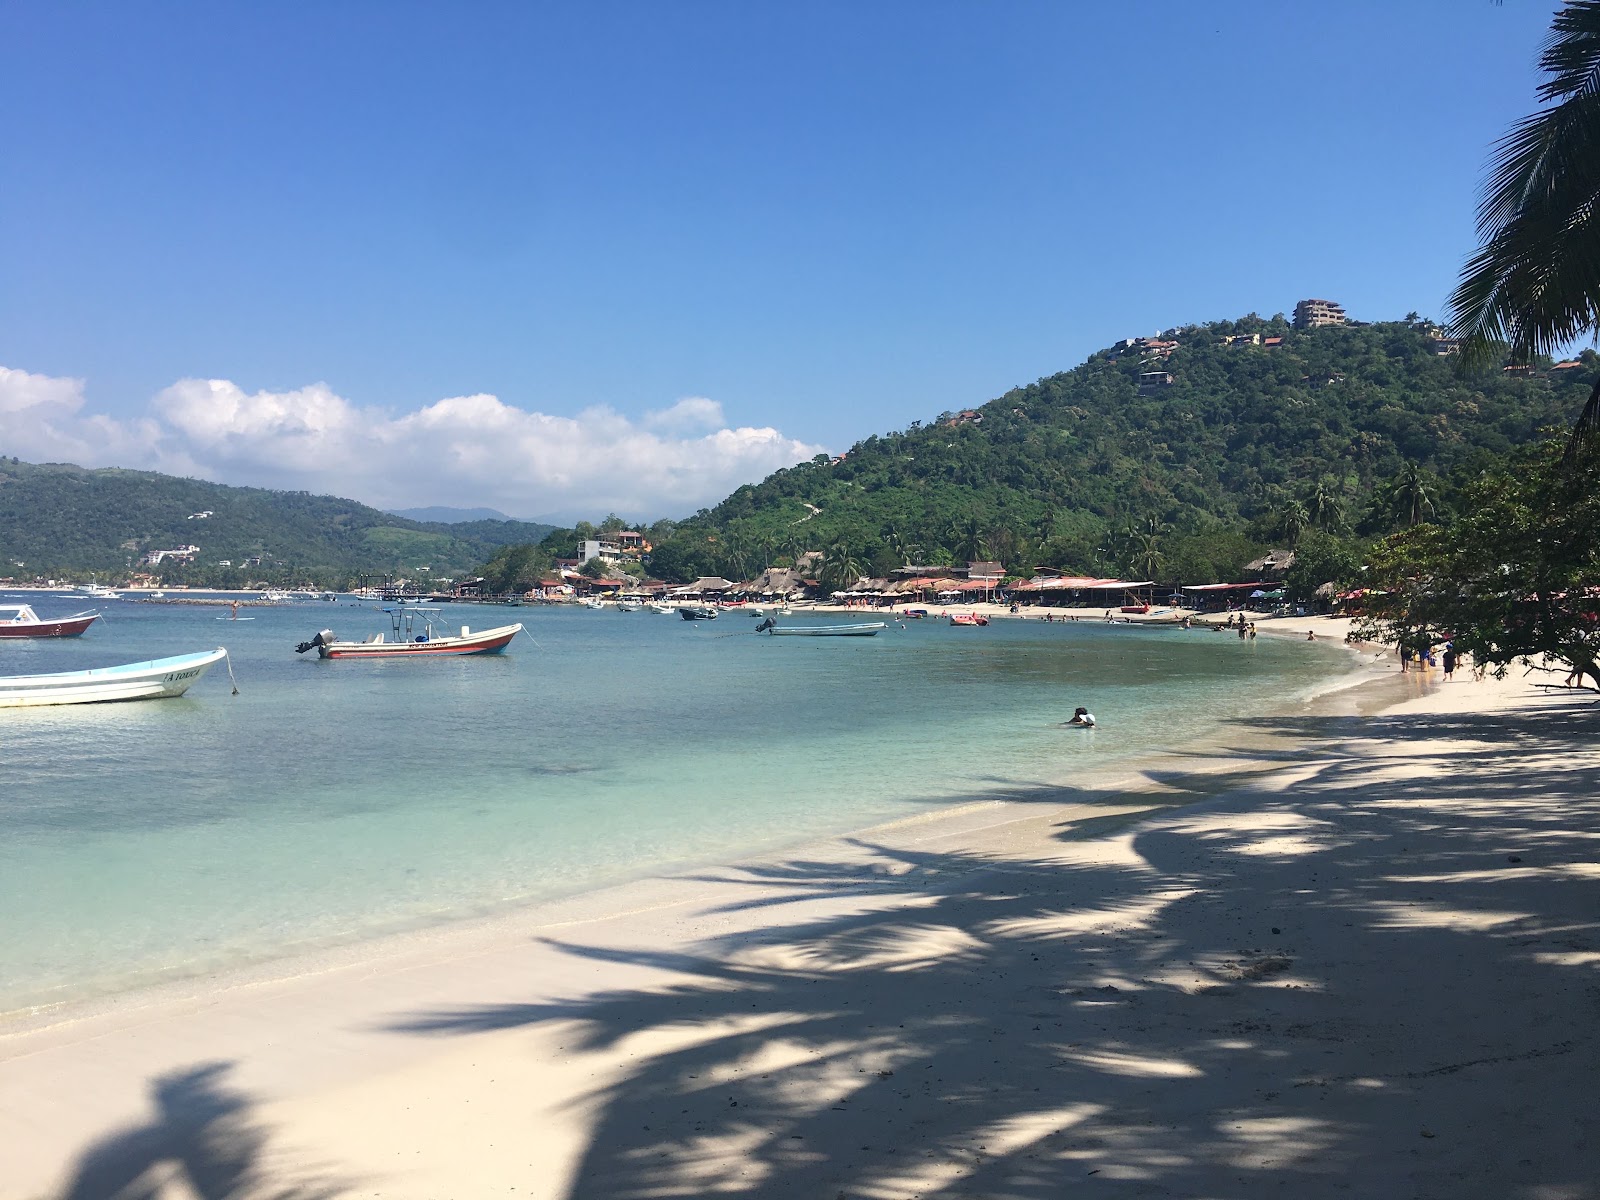 Zdjęcie Playa las Gatas - popularne miejsce wśród znawców relaksu